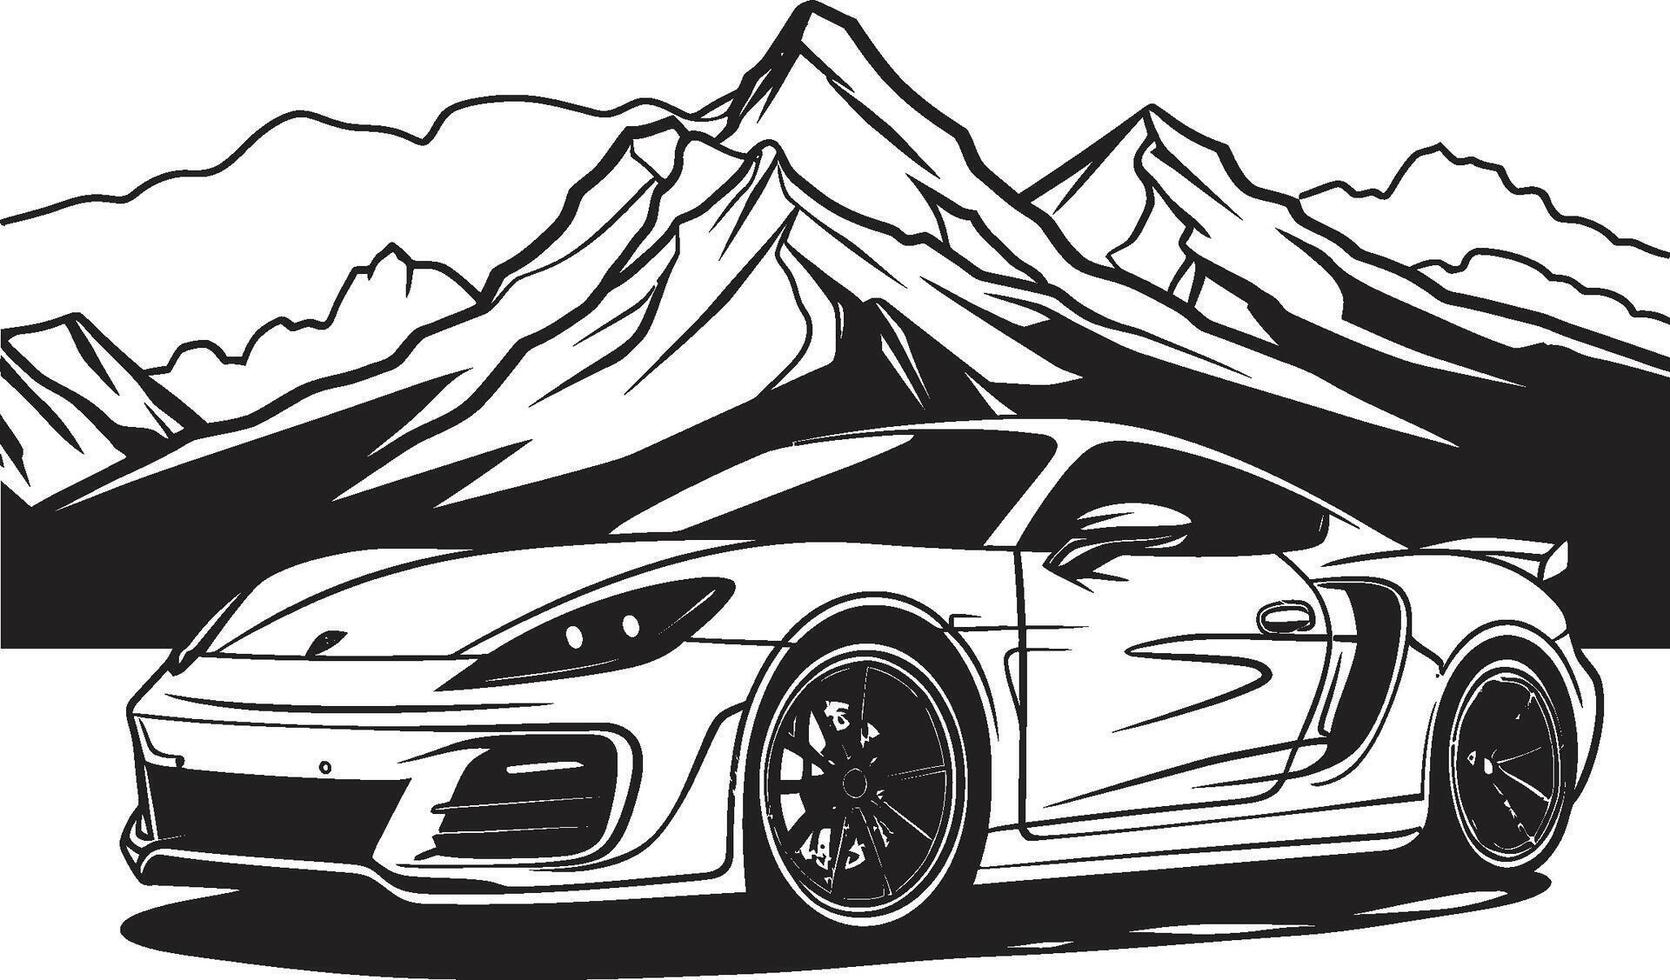 alpina apex ikoniska vektor symbol av en sporter bil navigerande berg vägar i svart bergsrygg rumble elegant svart logotyp med ikoniska sporter bil erövrande de berg